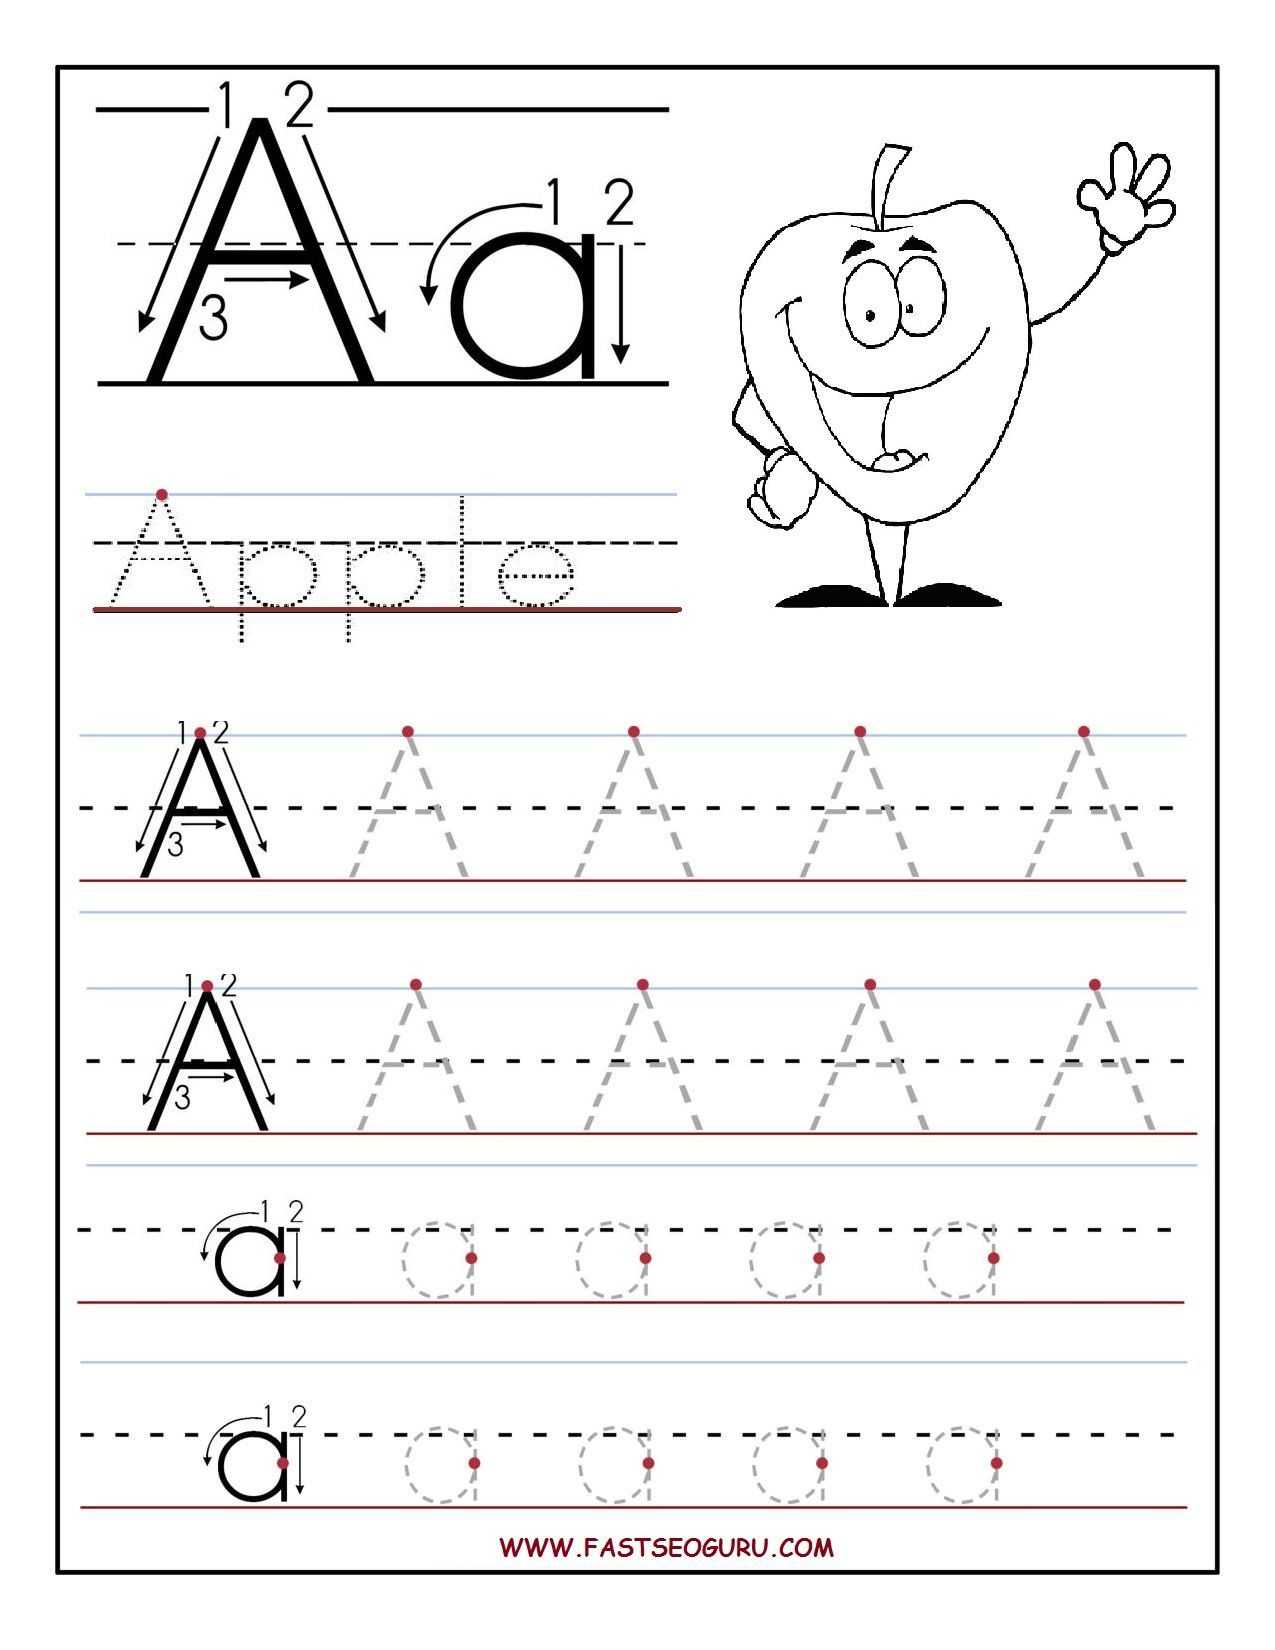 Letter P Worksheets for Preschool Also Preschool Letter Worksheets Lovely B Free B B Printable B Letter A